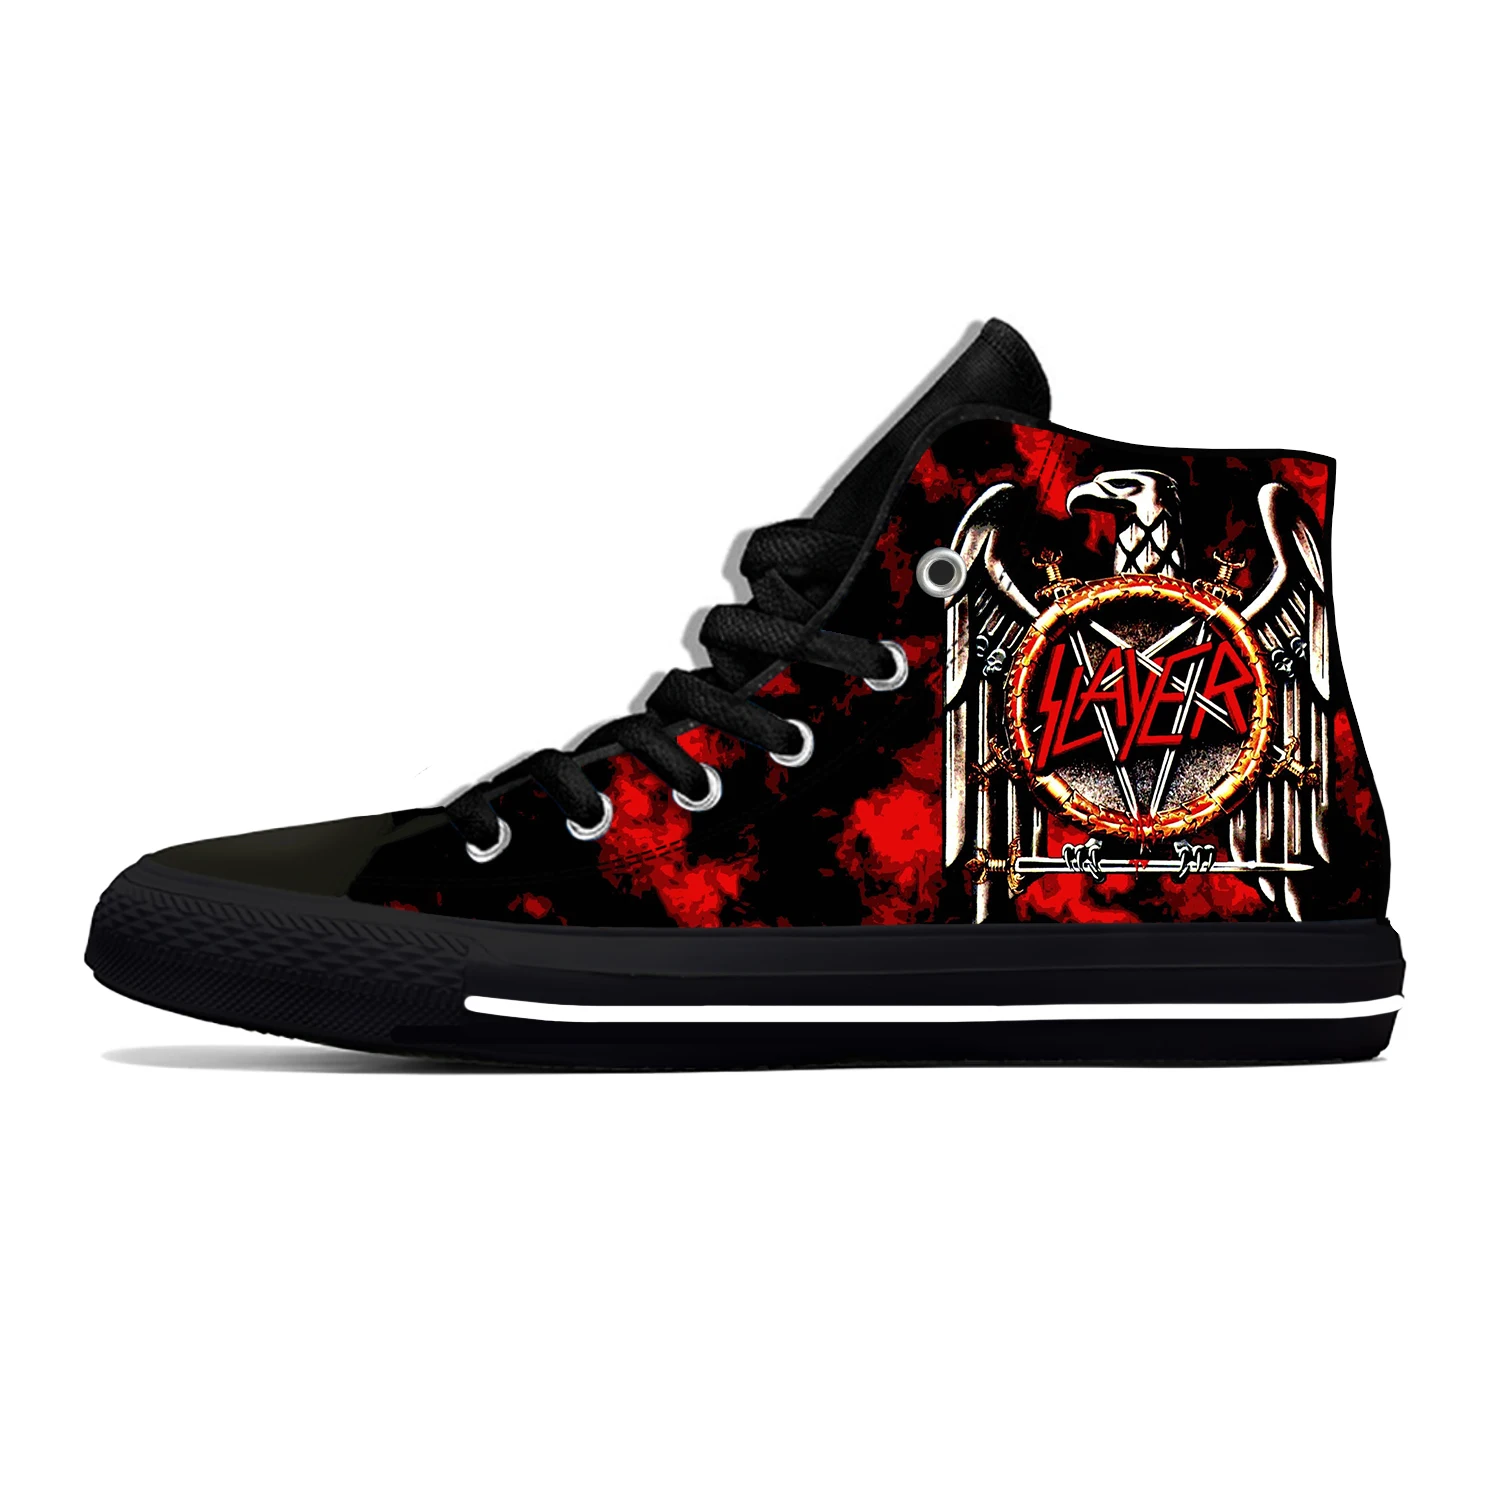 Slayer Heavy Metal Rock Band น่ากลัวสยองขวัญแฟชั่นสบายๆรองเท้าน้ำหนักเบา Breathable 3D พิมพ์ผู้ชายผู้หญิงรองเท้าผ้า...